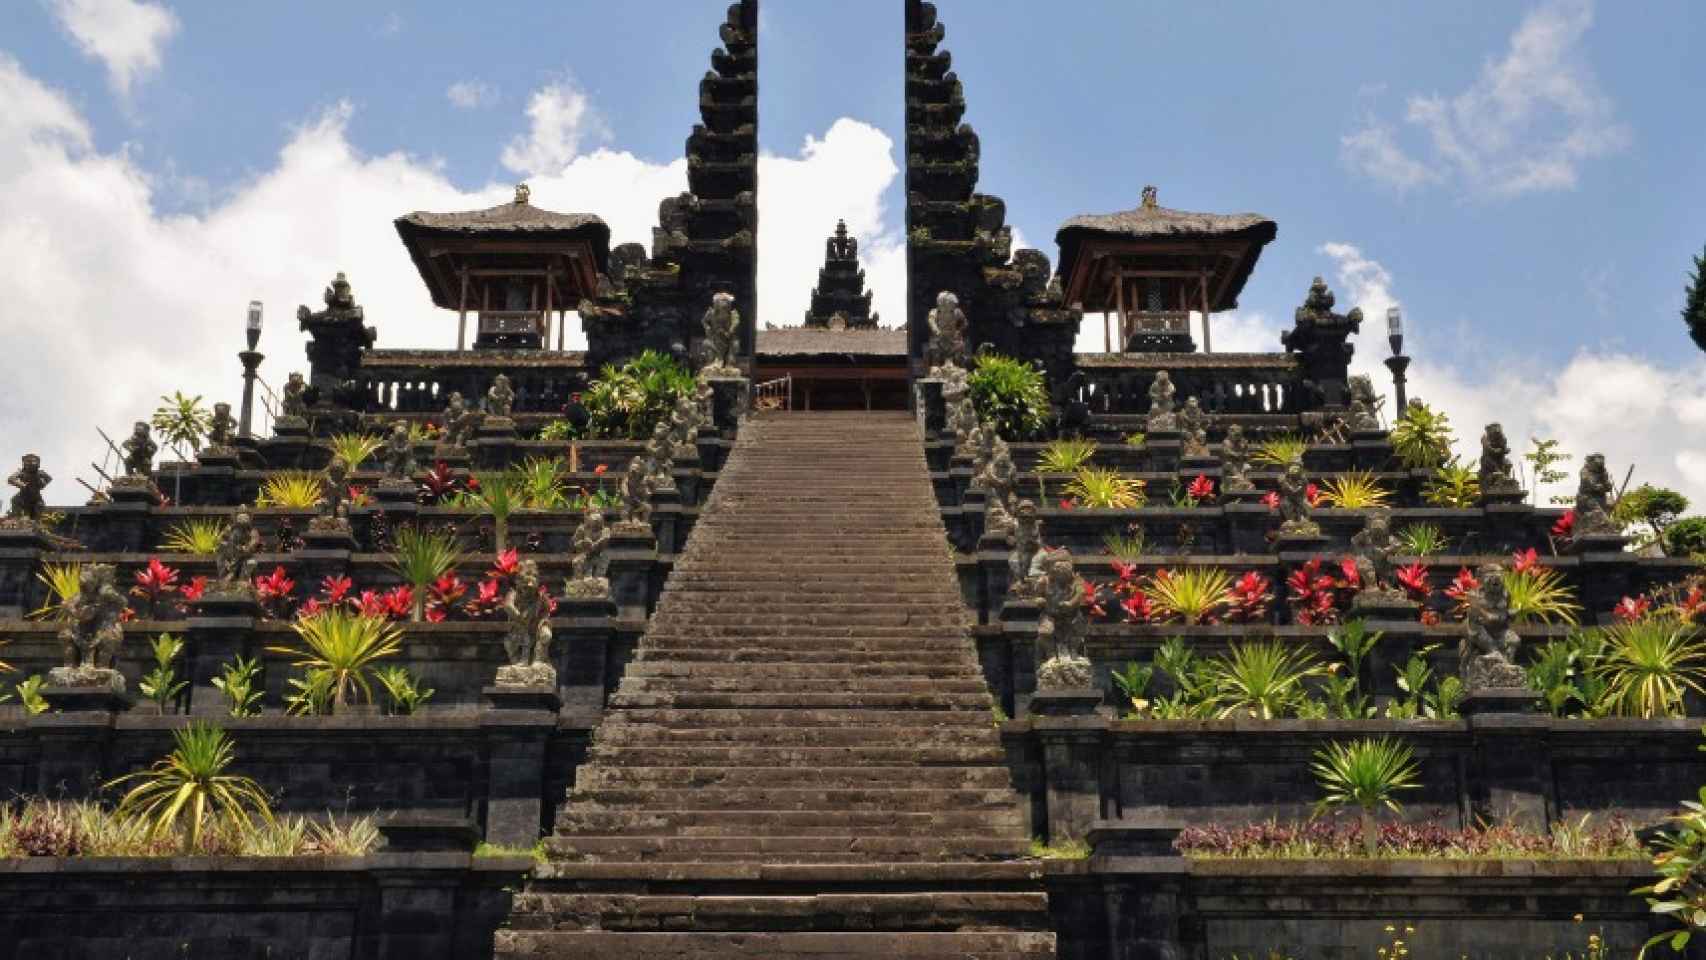 El templo madre de Besakih, una visita obligada si vas a Bali.